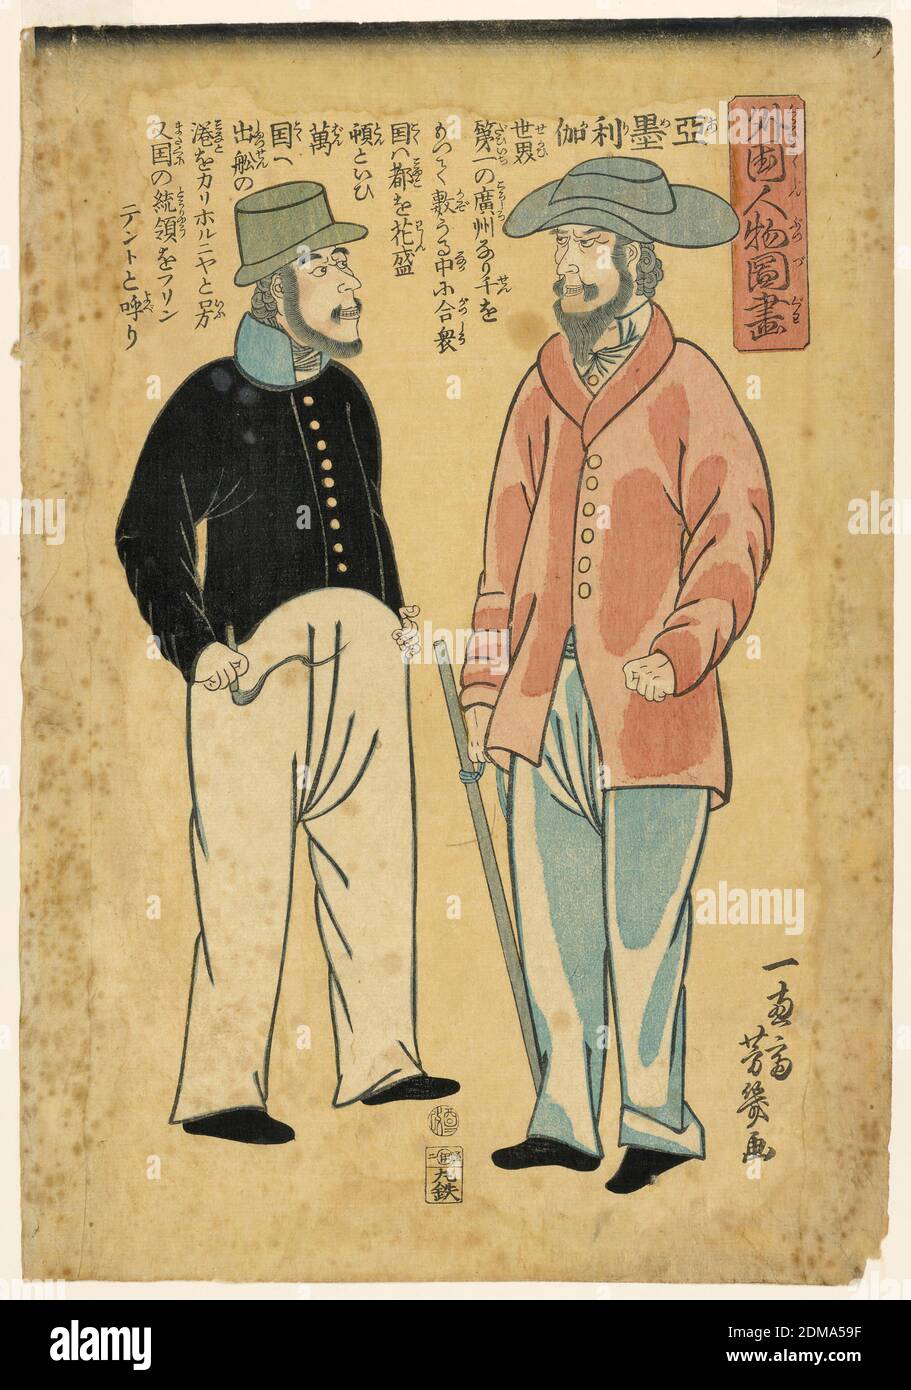 Deux membres du Parti Commodore Perry, marin américain et soldat, Utagawa Yoshiiku, japonais, 1833 - 1904, Woodcut sur papier mûrier, marin américain debout et homme avec un bâton. Longue inscription en japonais en haut et en bas à droite., Japon, 1861, Imprimer Banque D'Images